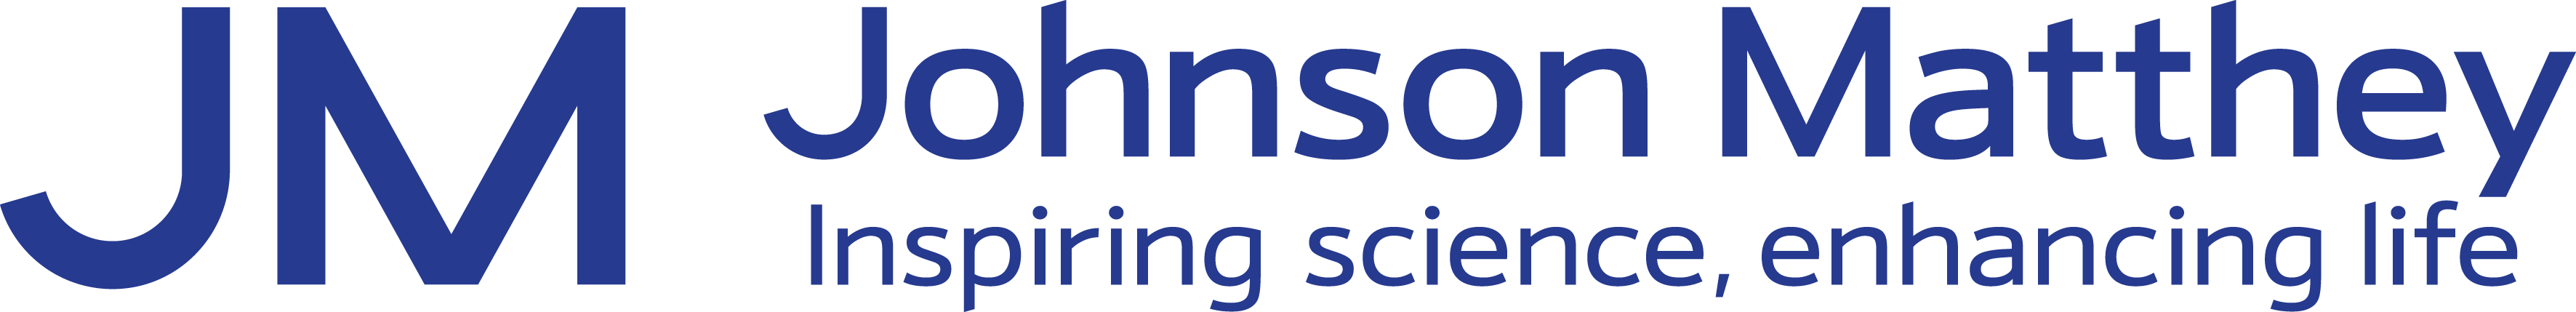 Full logo - Blue - Pantone (print).png